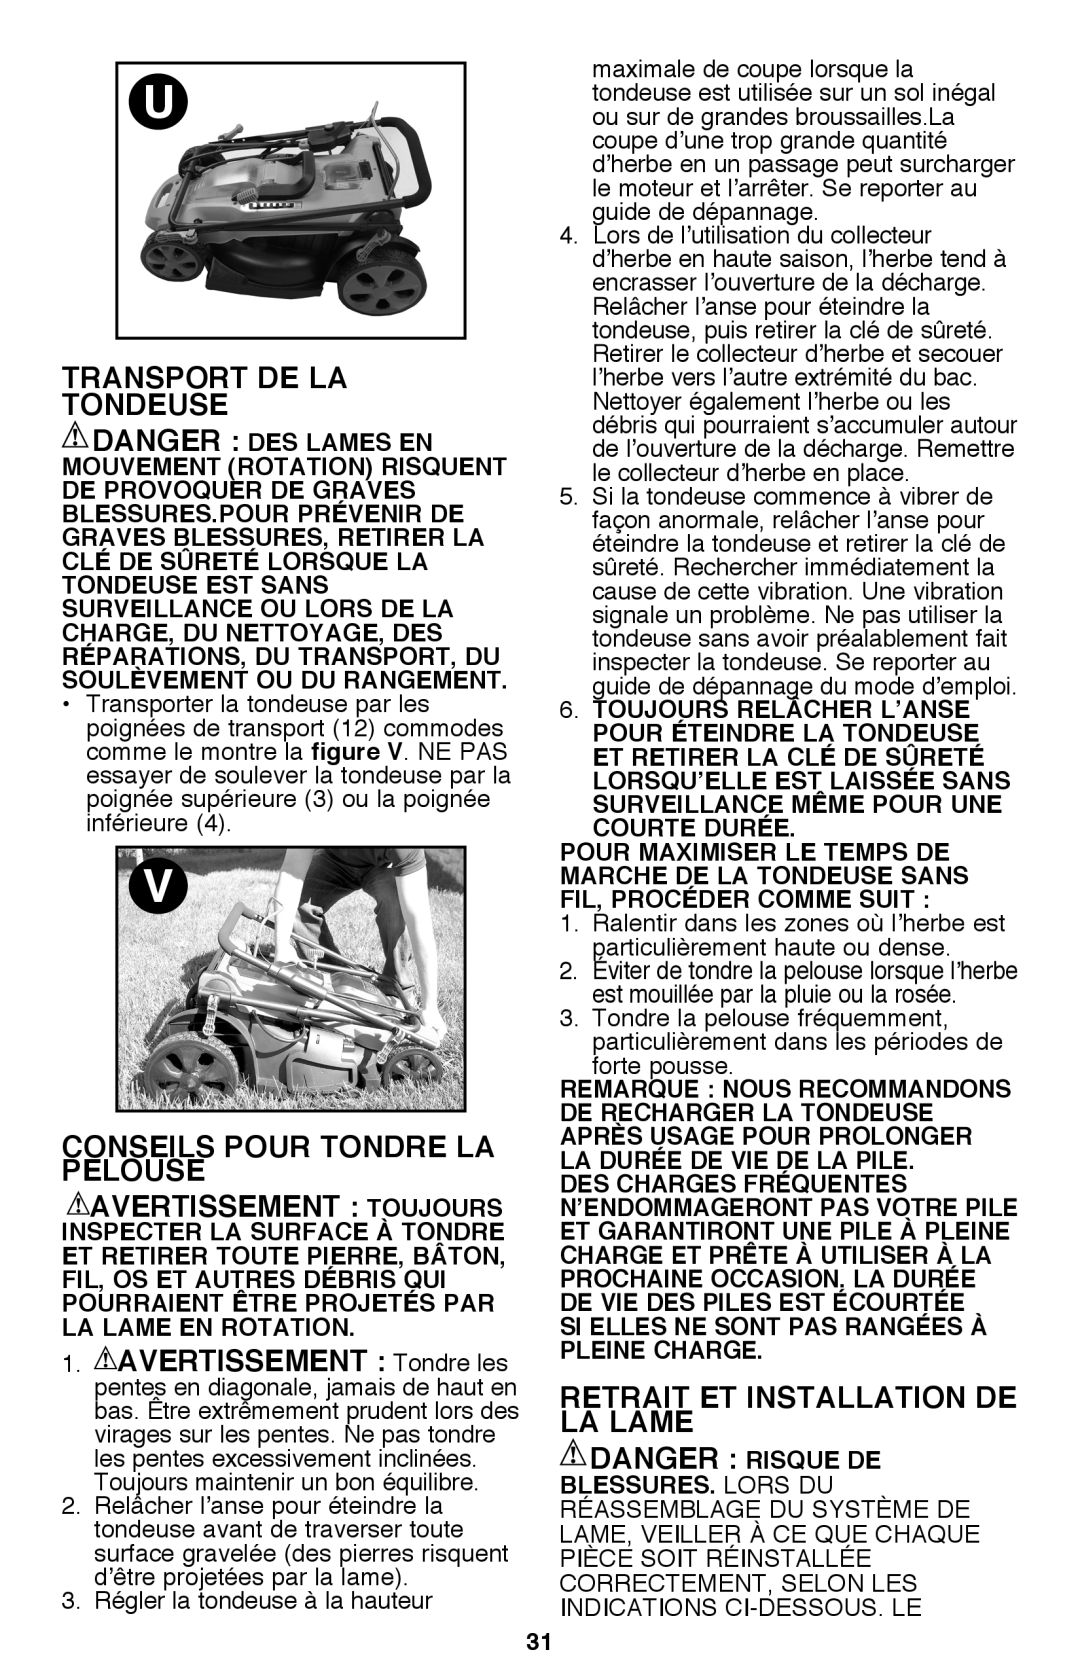 Black & Decker CM2040 Transport De La Tondeuse, Conseils Pour Tondre La Pelouse, Retrait Et Installation De La Lame 